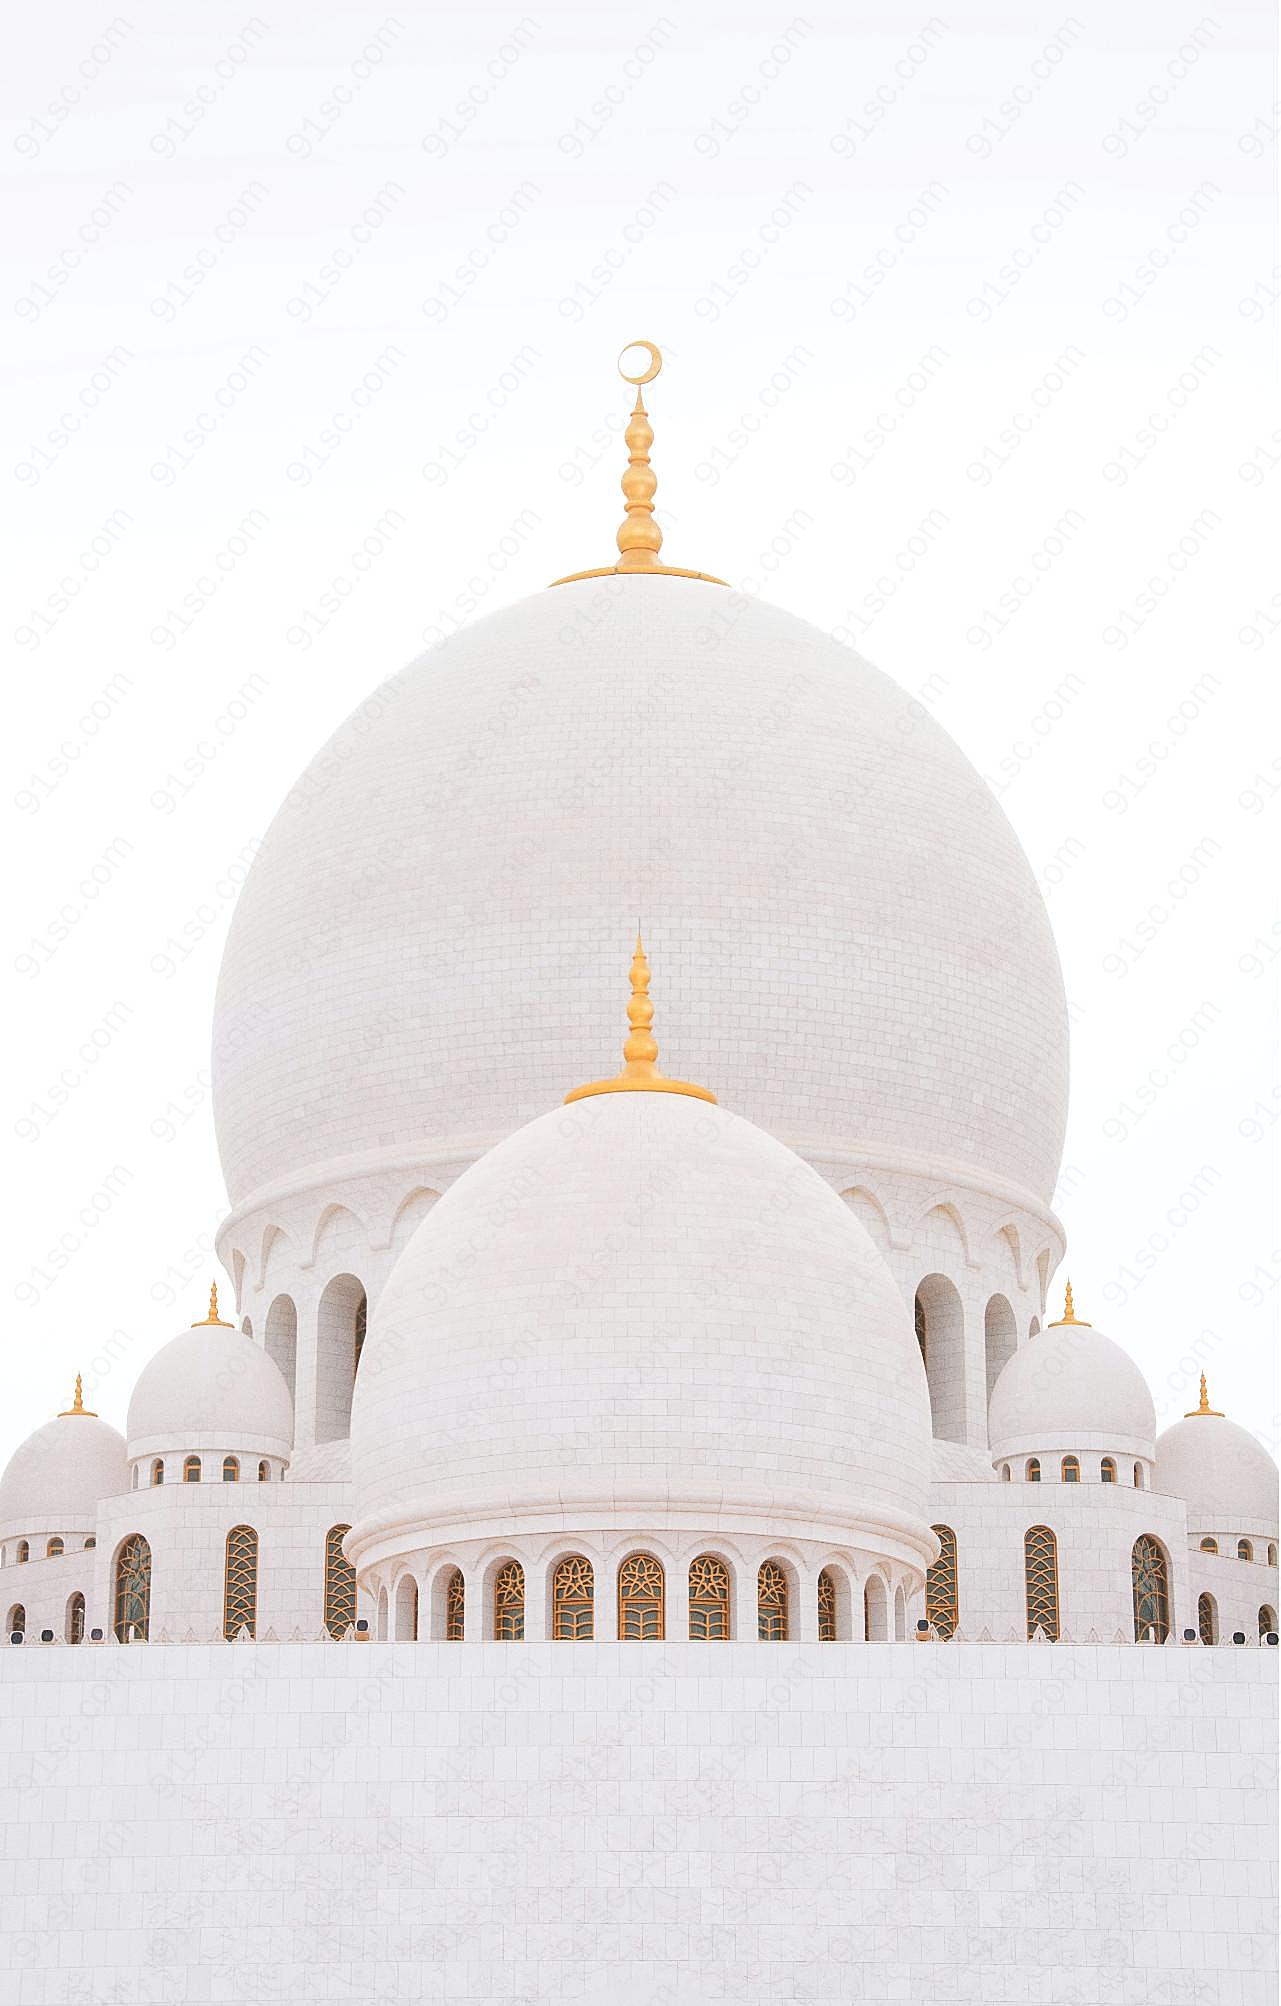 迪拜阿布扎比清真寺图片特色建筑